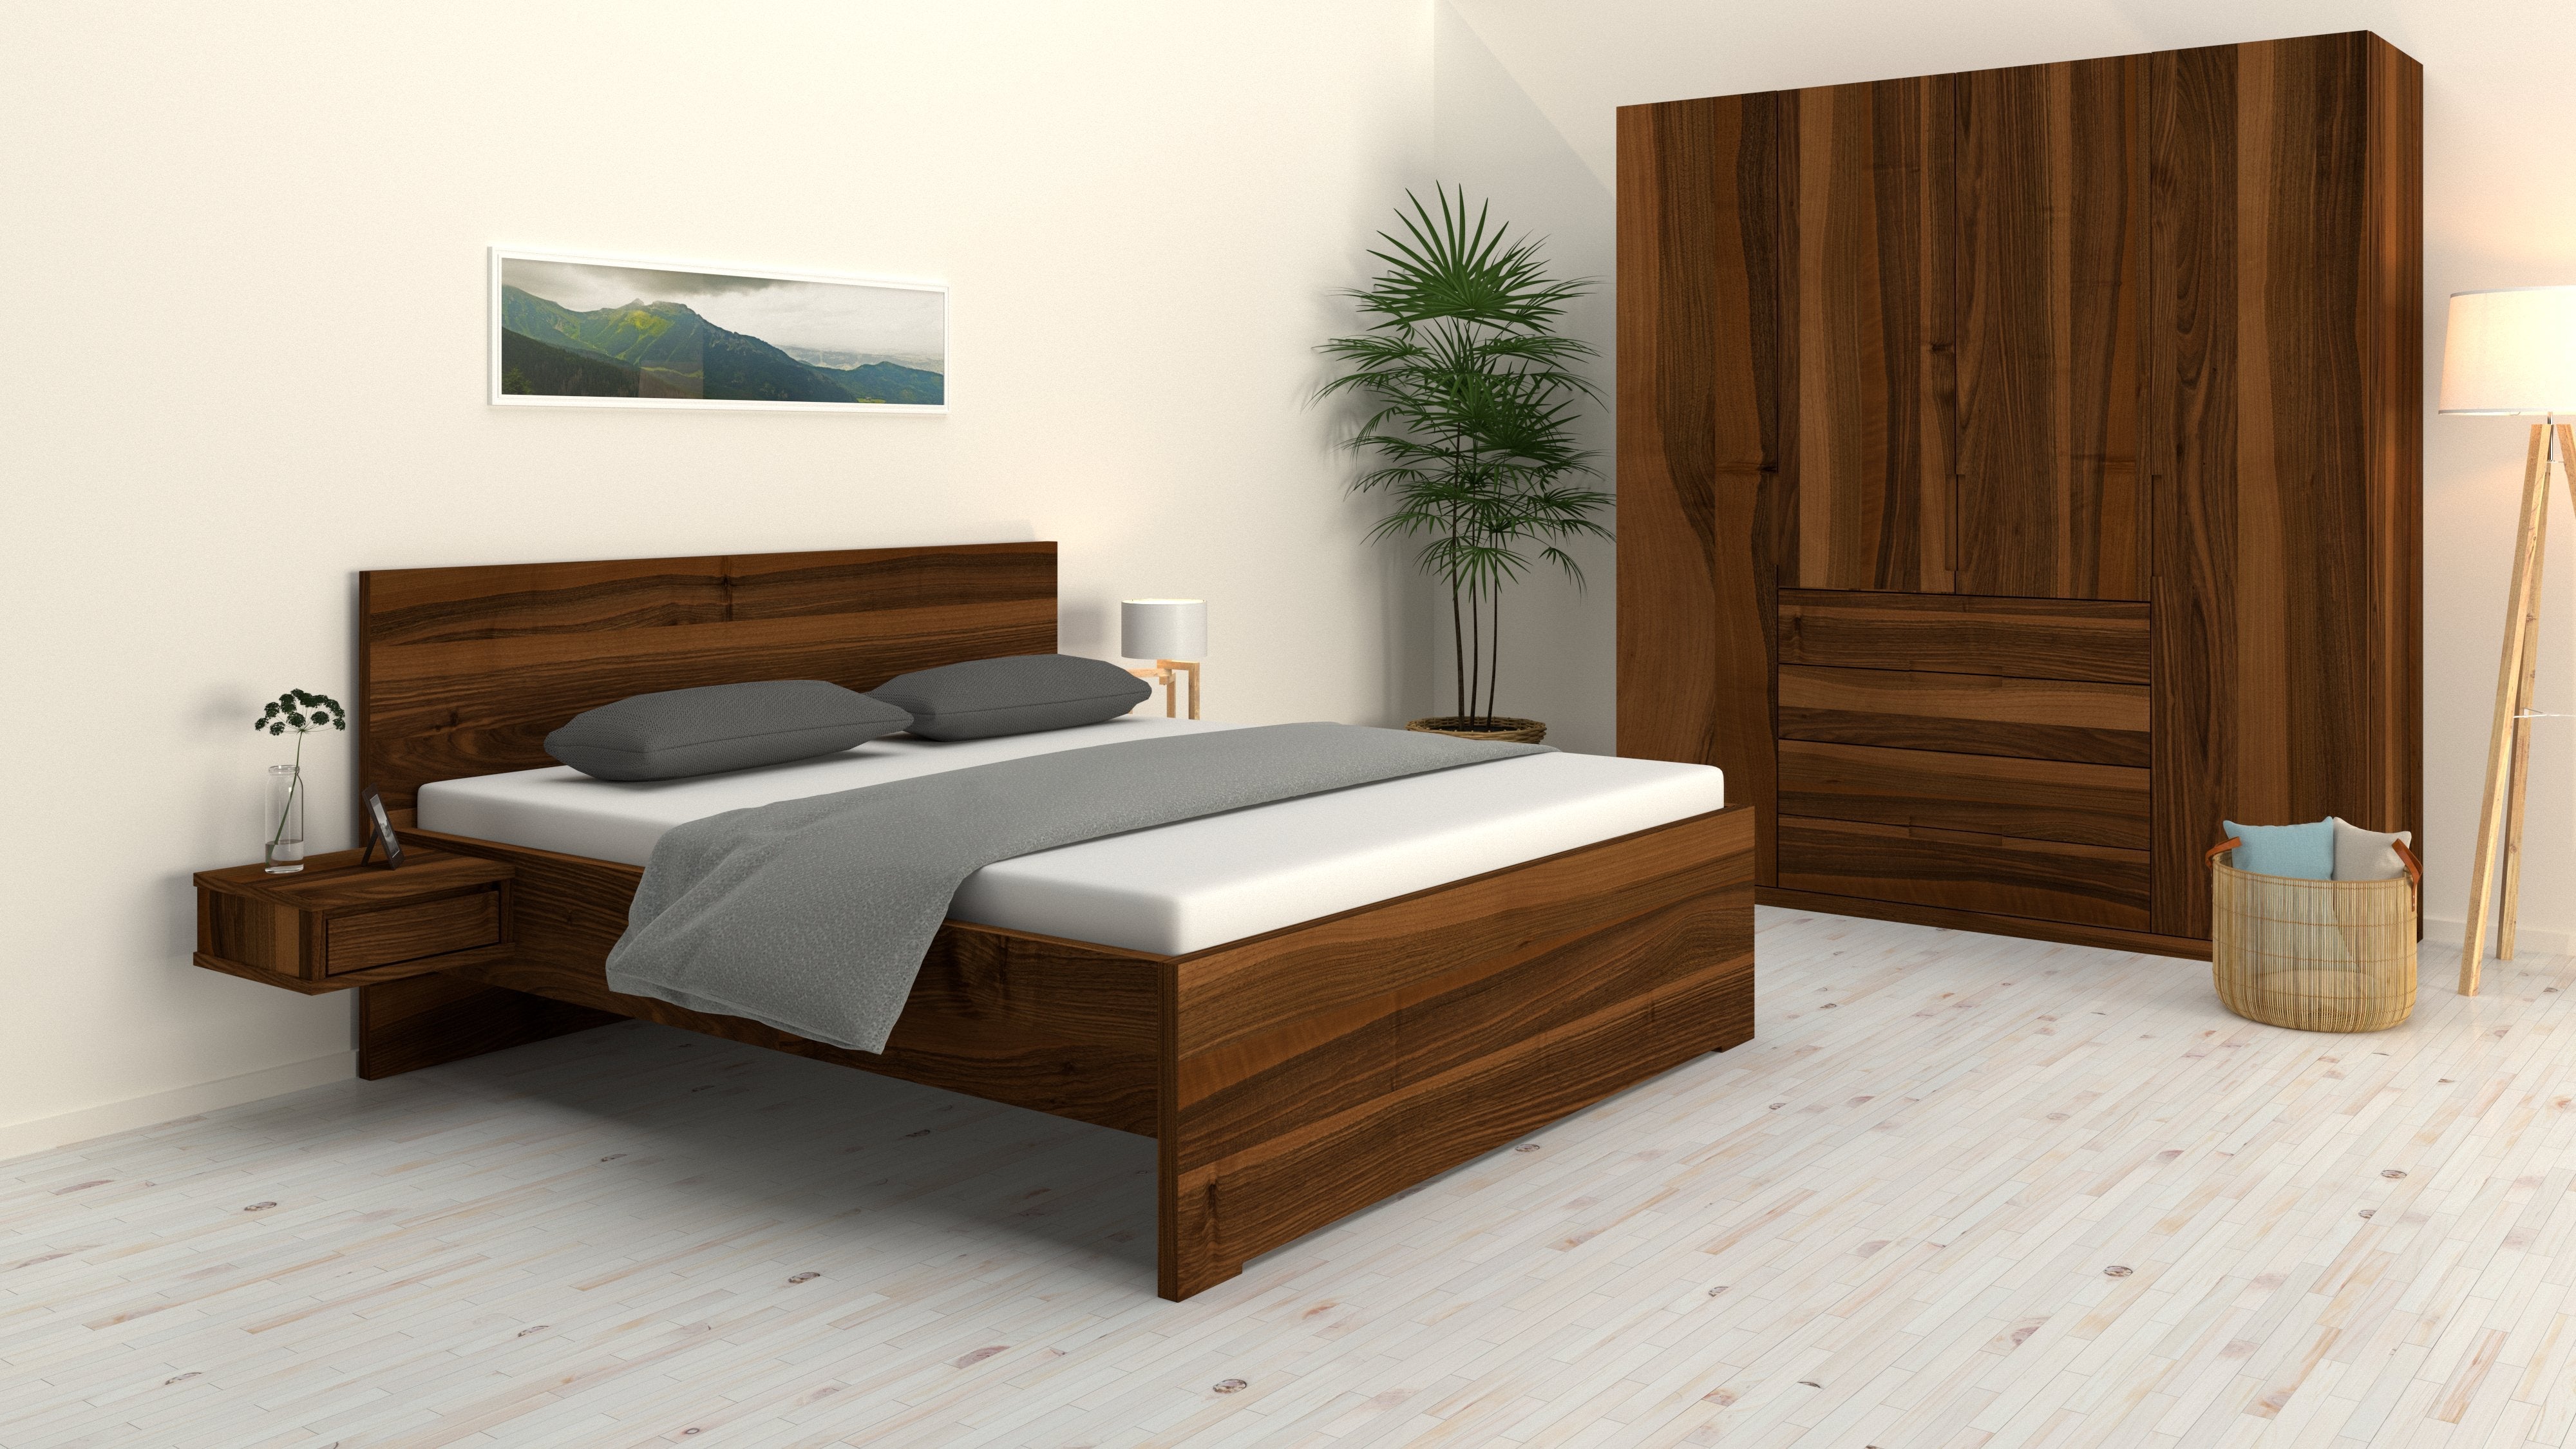 Schlafzimmer in Nussholz mit Bett Mia von Kuttin 